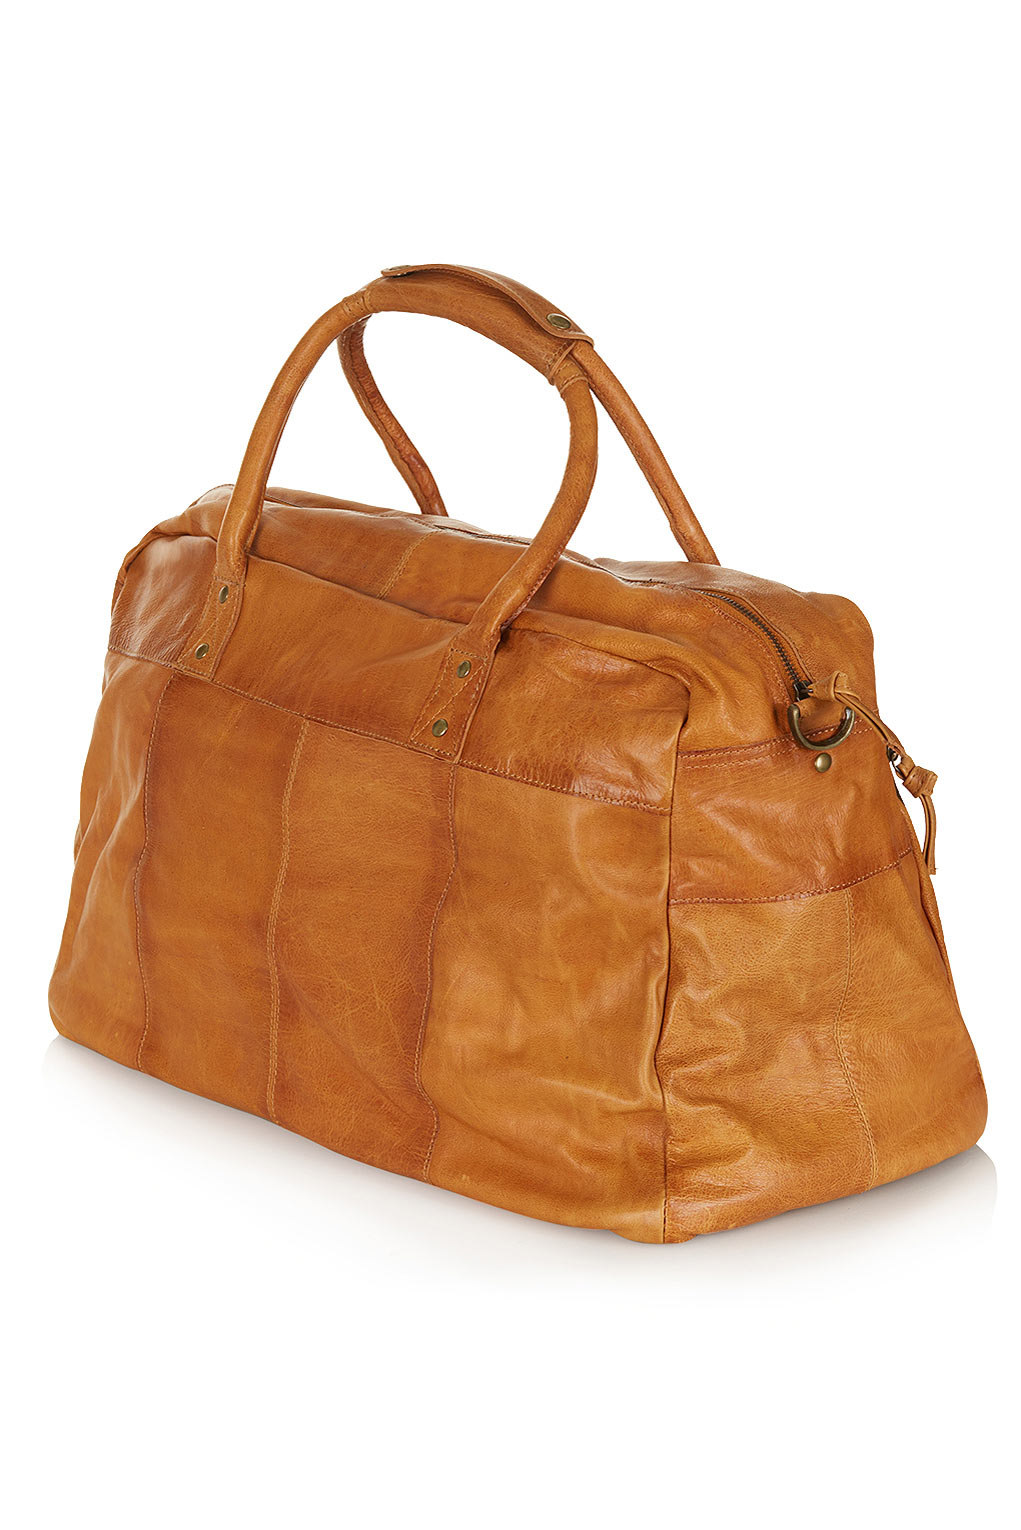 Lyst - Topshop Vintage Leather Luggage Bag in Brown